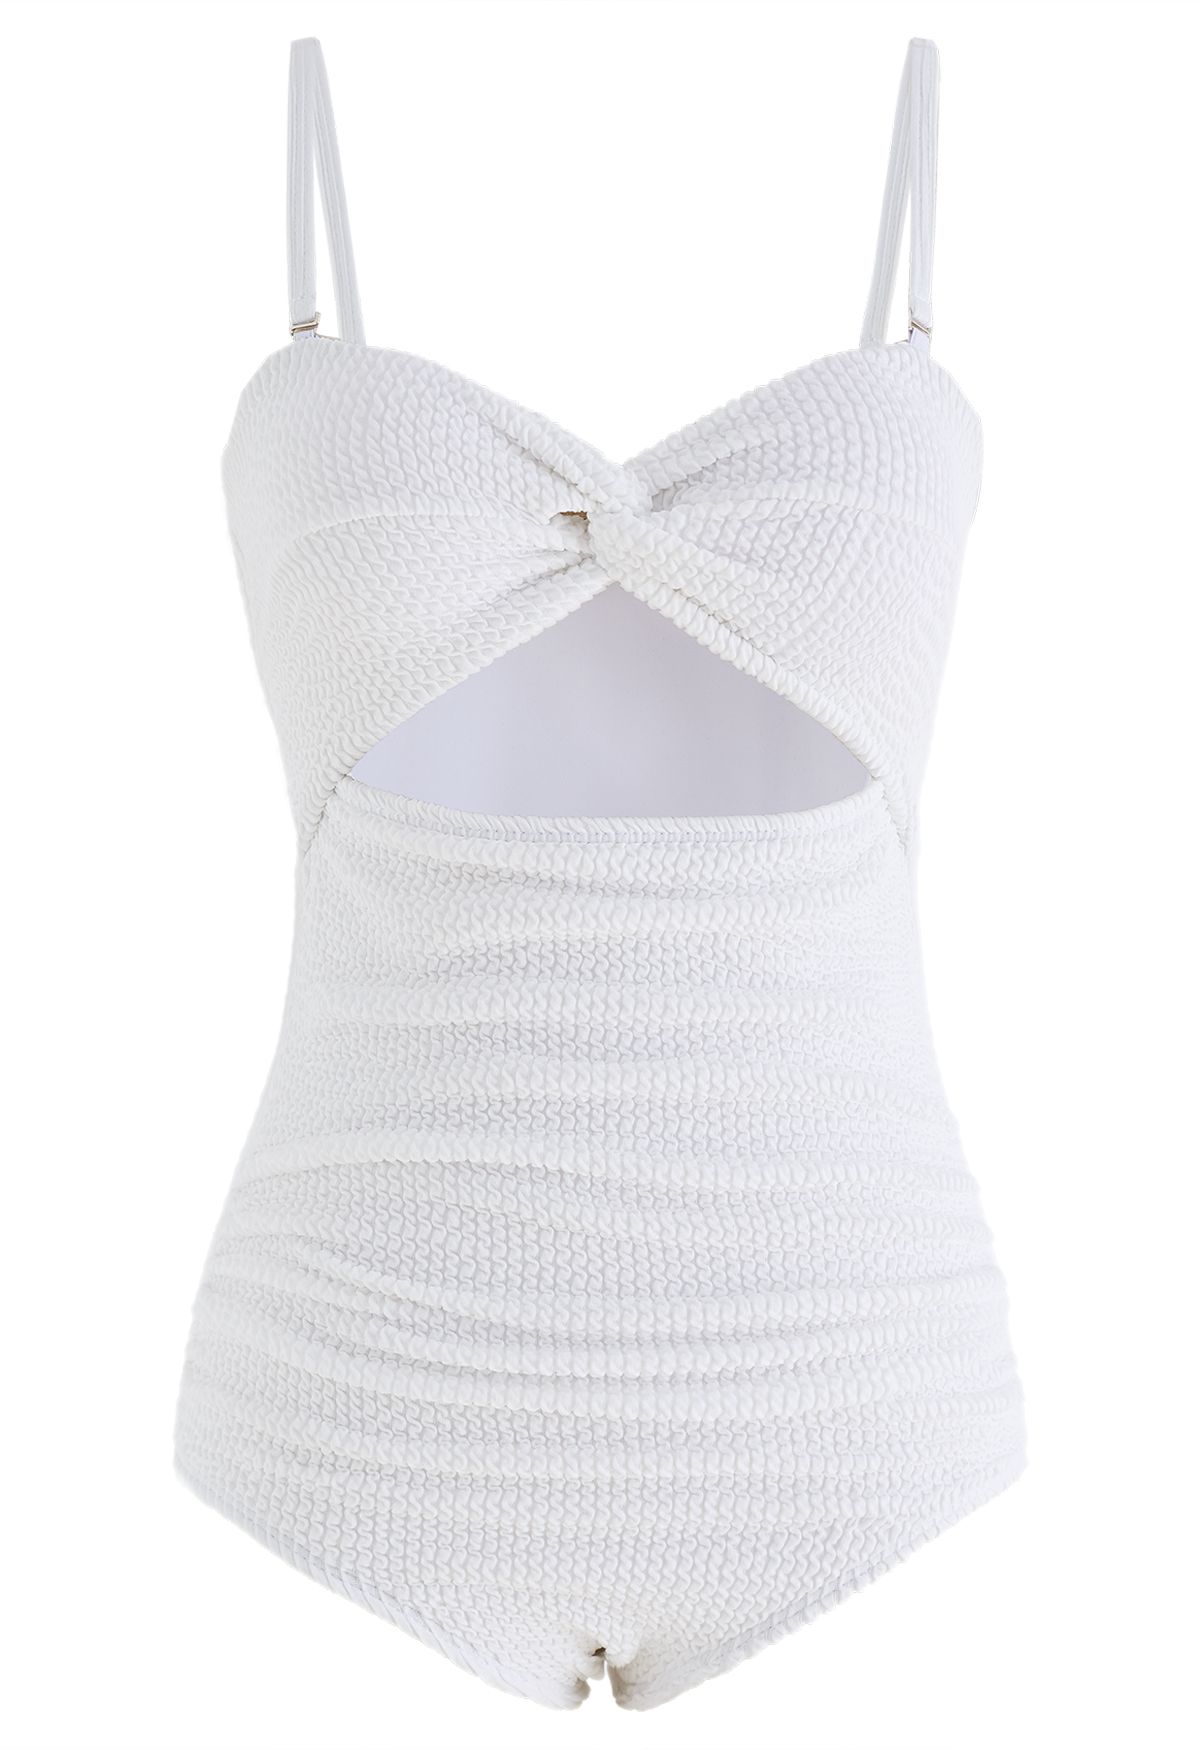 ملابس السباحة البيضاء المموجة ذات الفتحات الملتوية